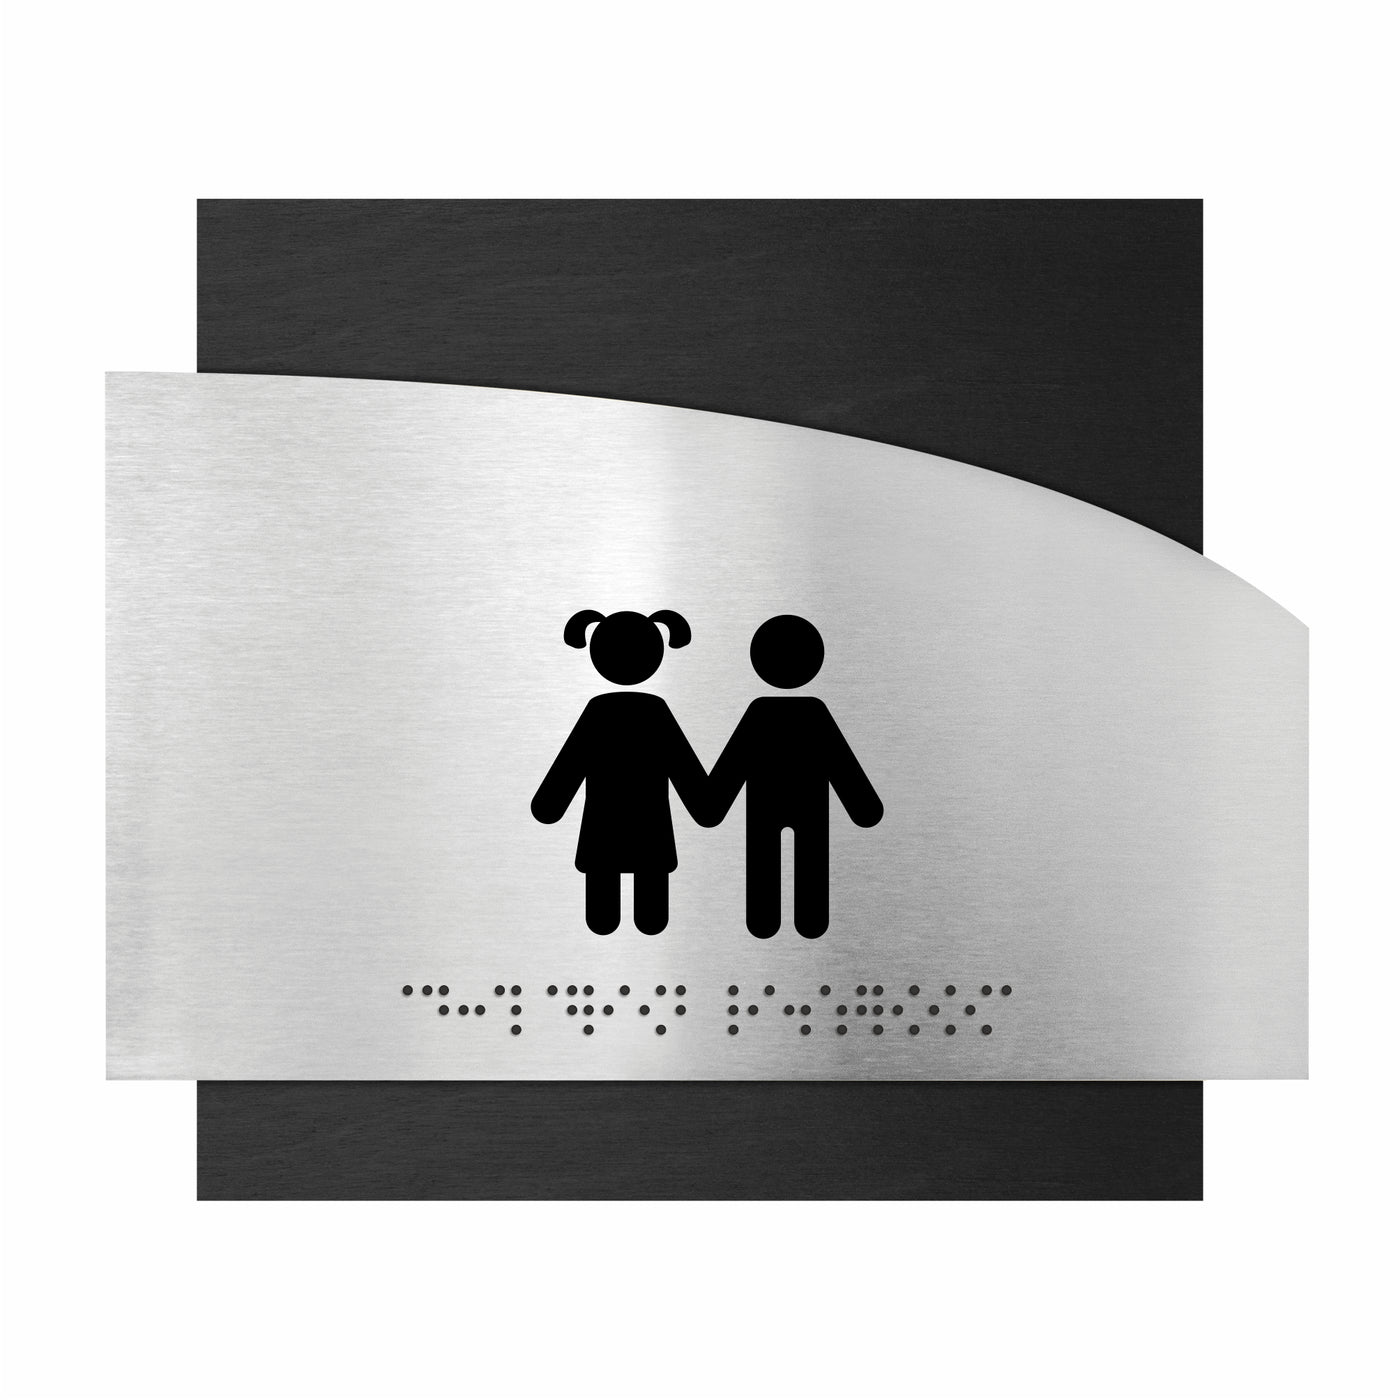 Wooden Children Restroom Sign "Wave" Design